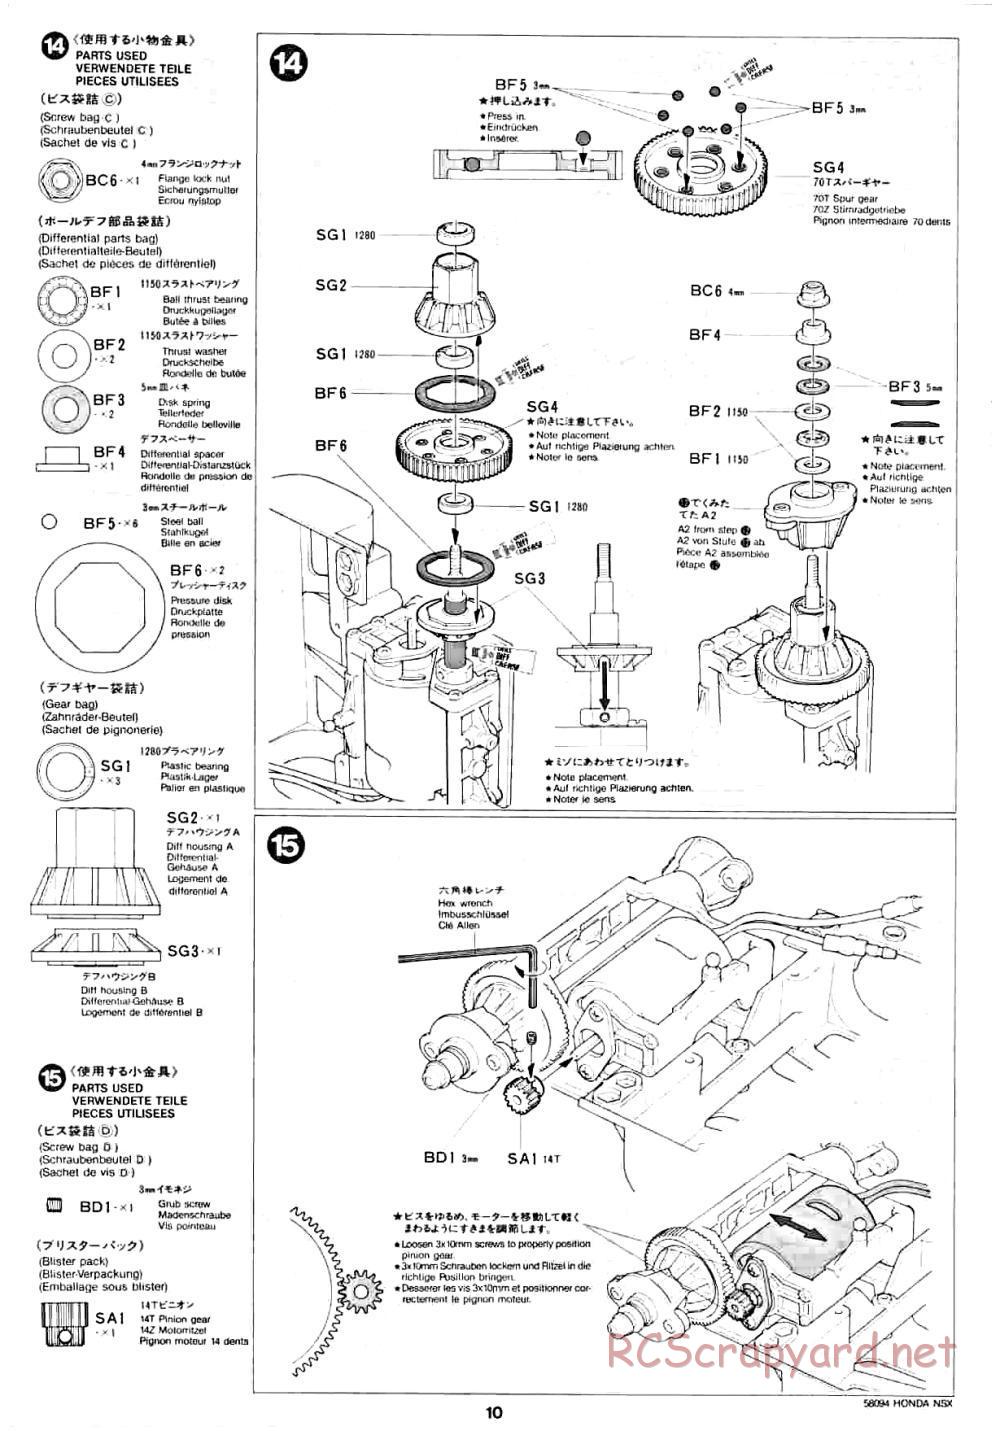 Tamiya - Honda NSX - 58094 - Manual - Page 10